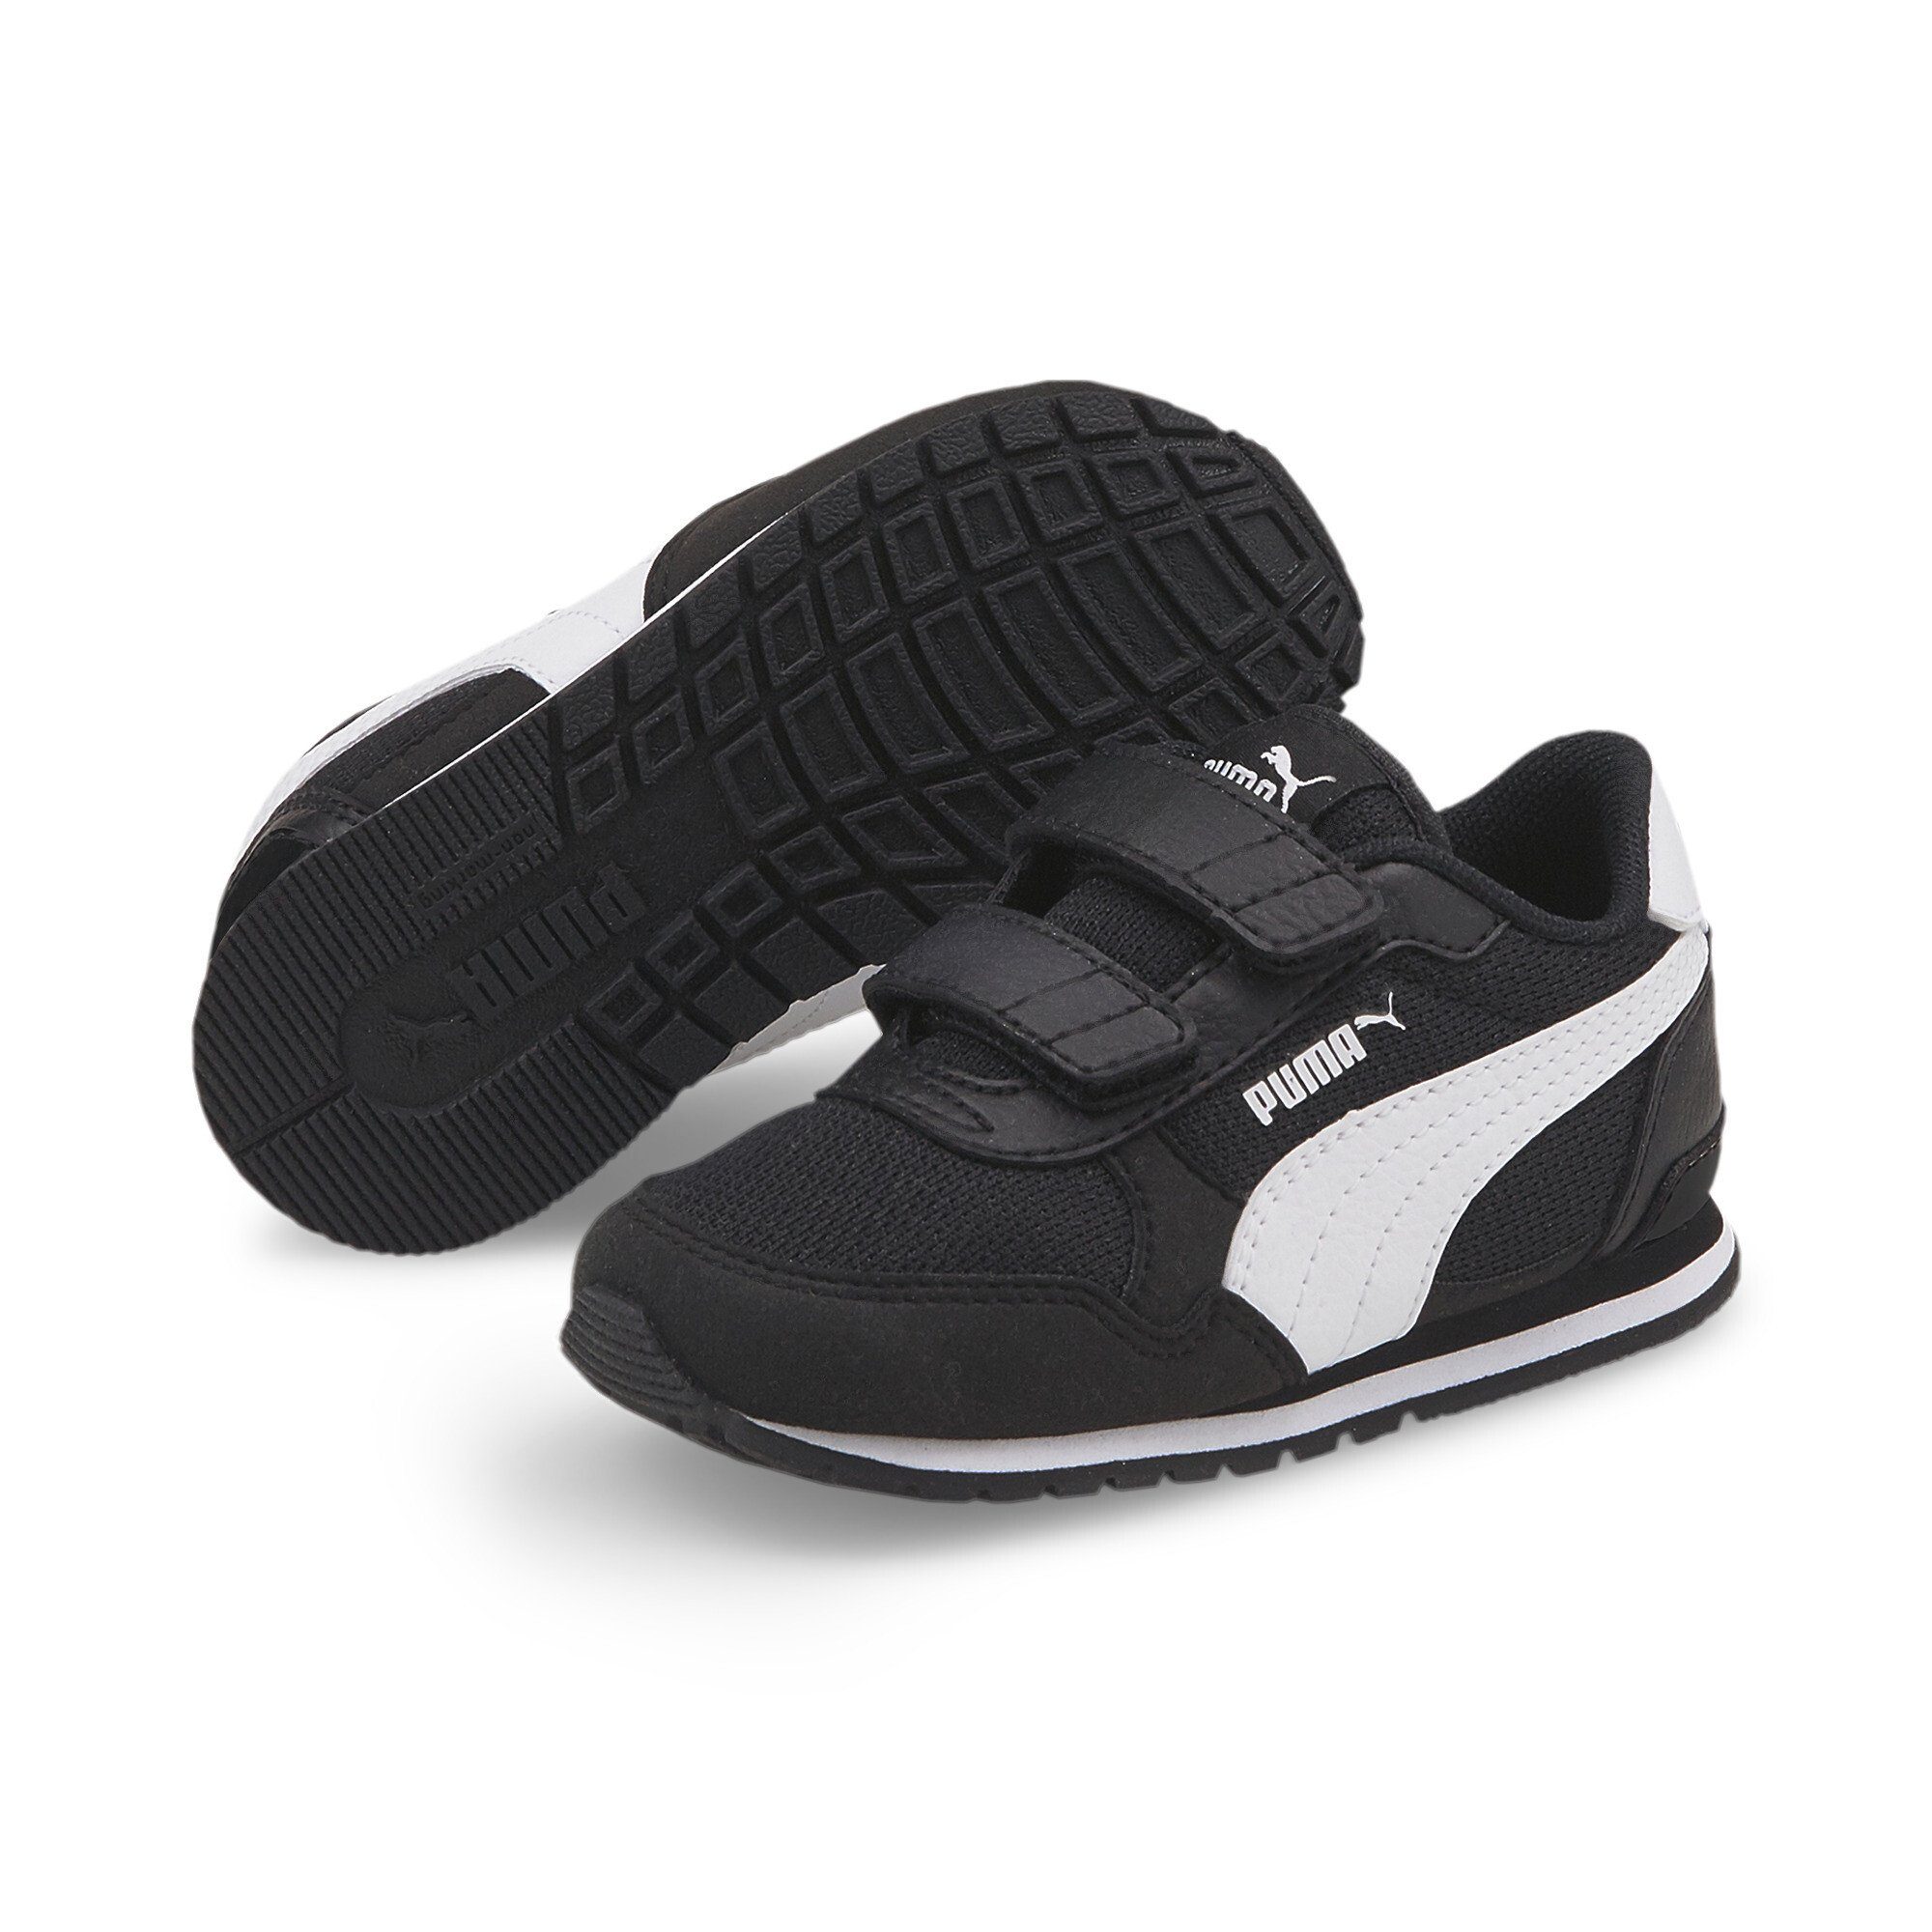 Runner PUMA Sneaker Black V Sneakers ST Mesh White Kinder v3